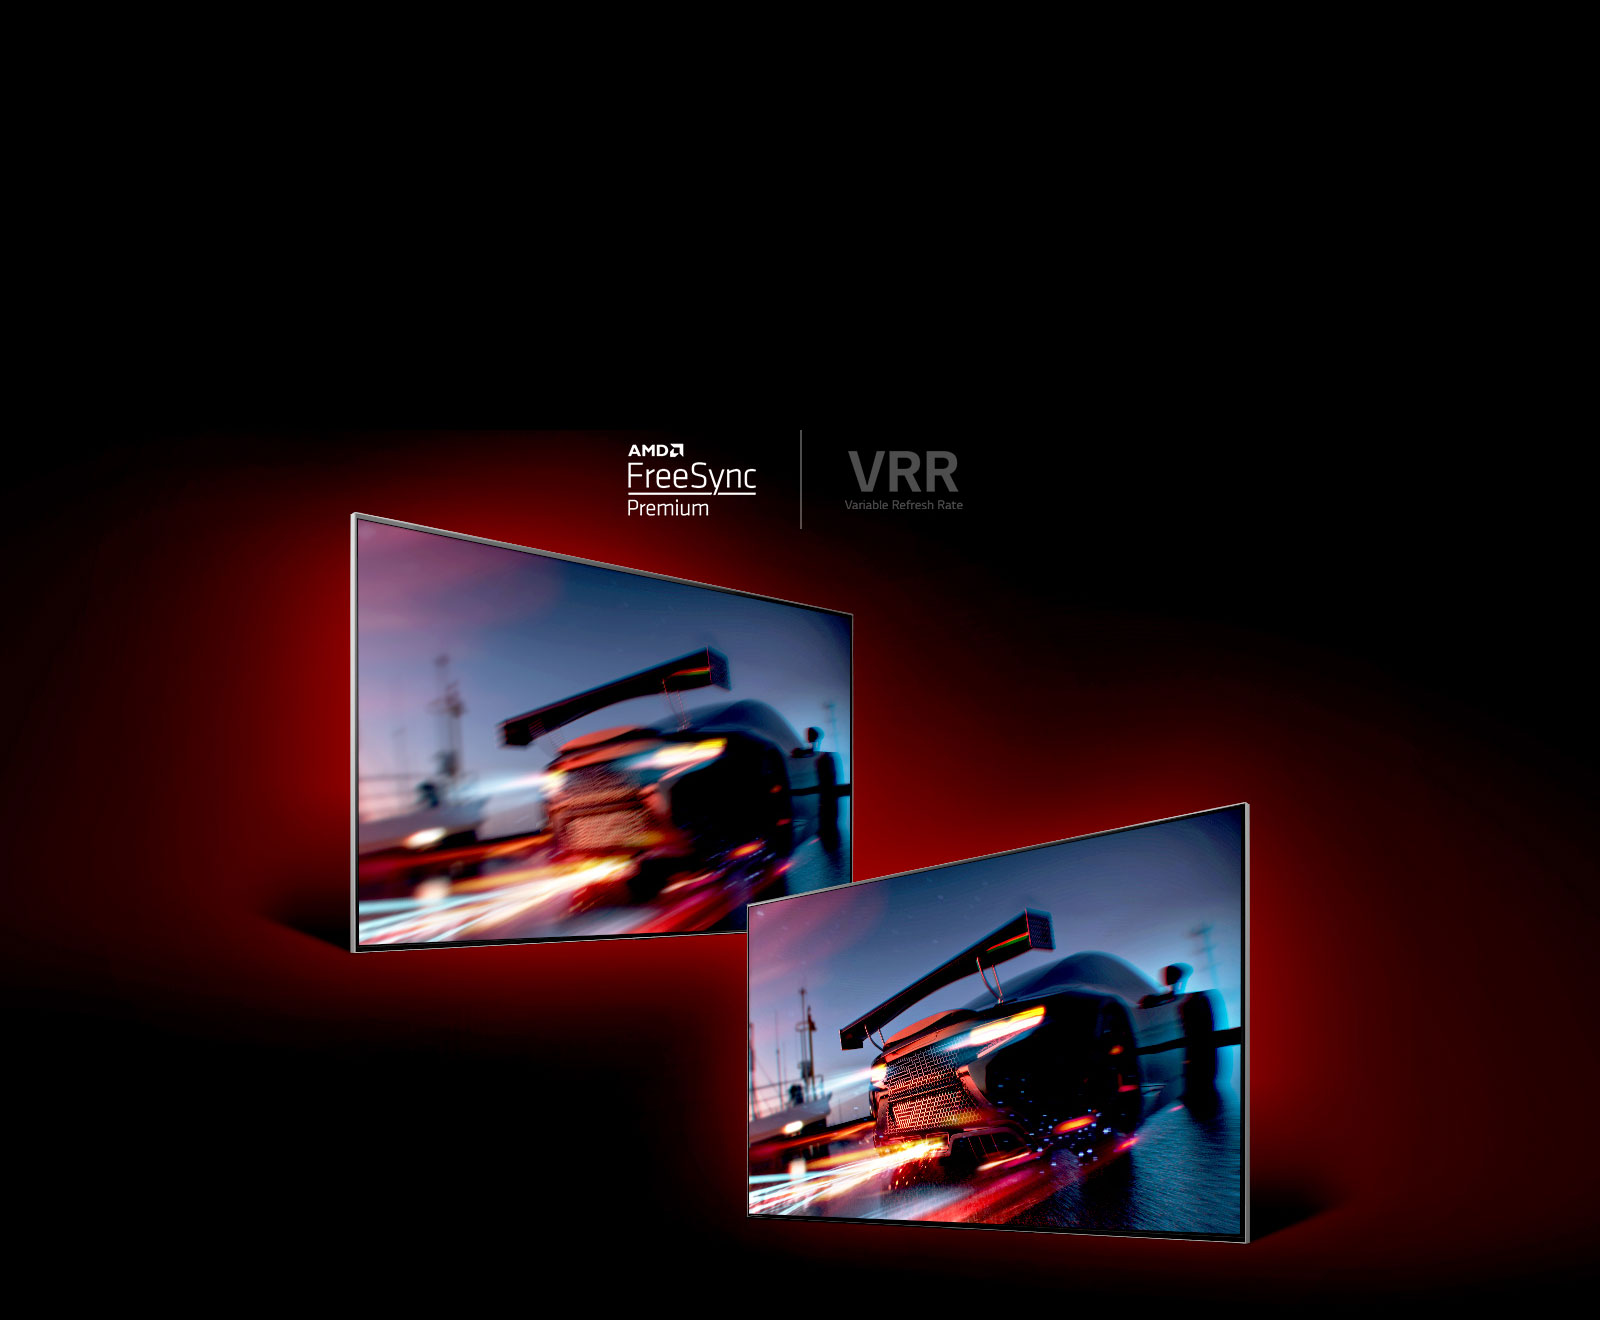 2つのテレビが顔を合わせています。左側には、テレビは右側にある間にかなりぼやけているように見える高速レーシングカーを投影しています。